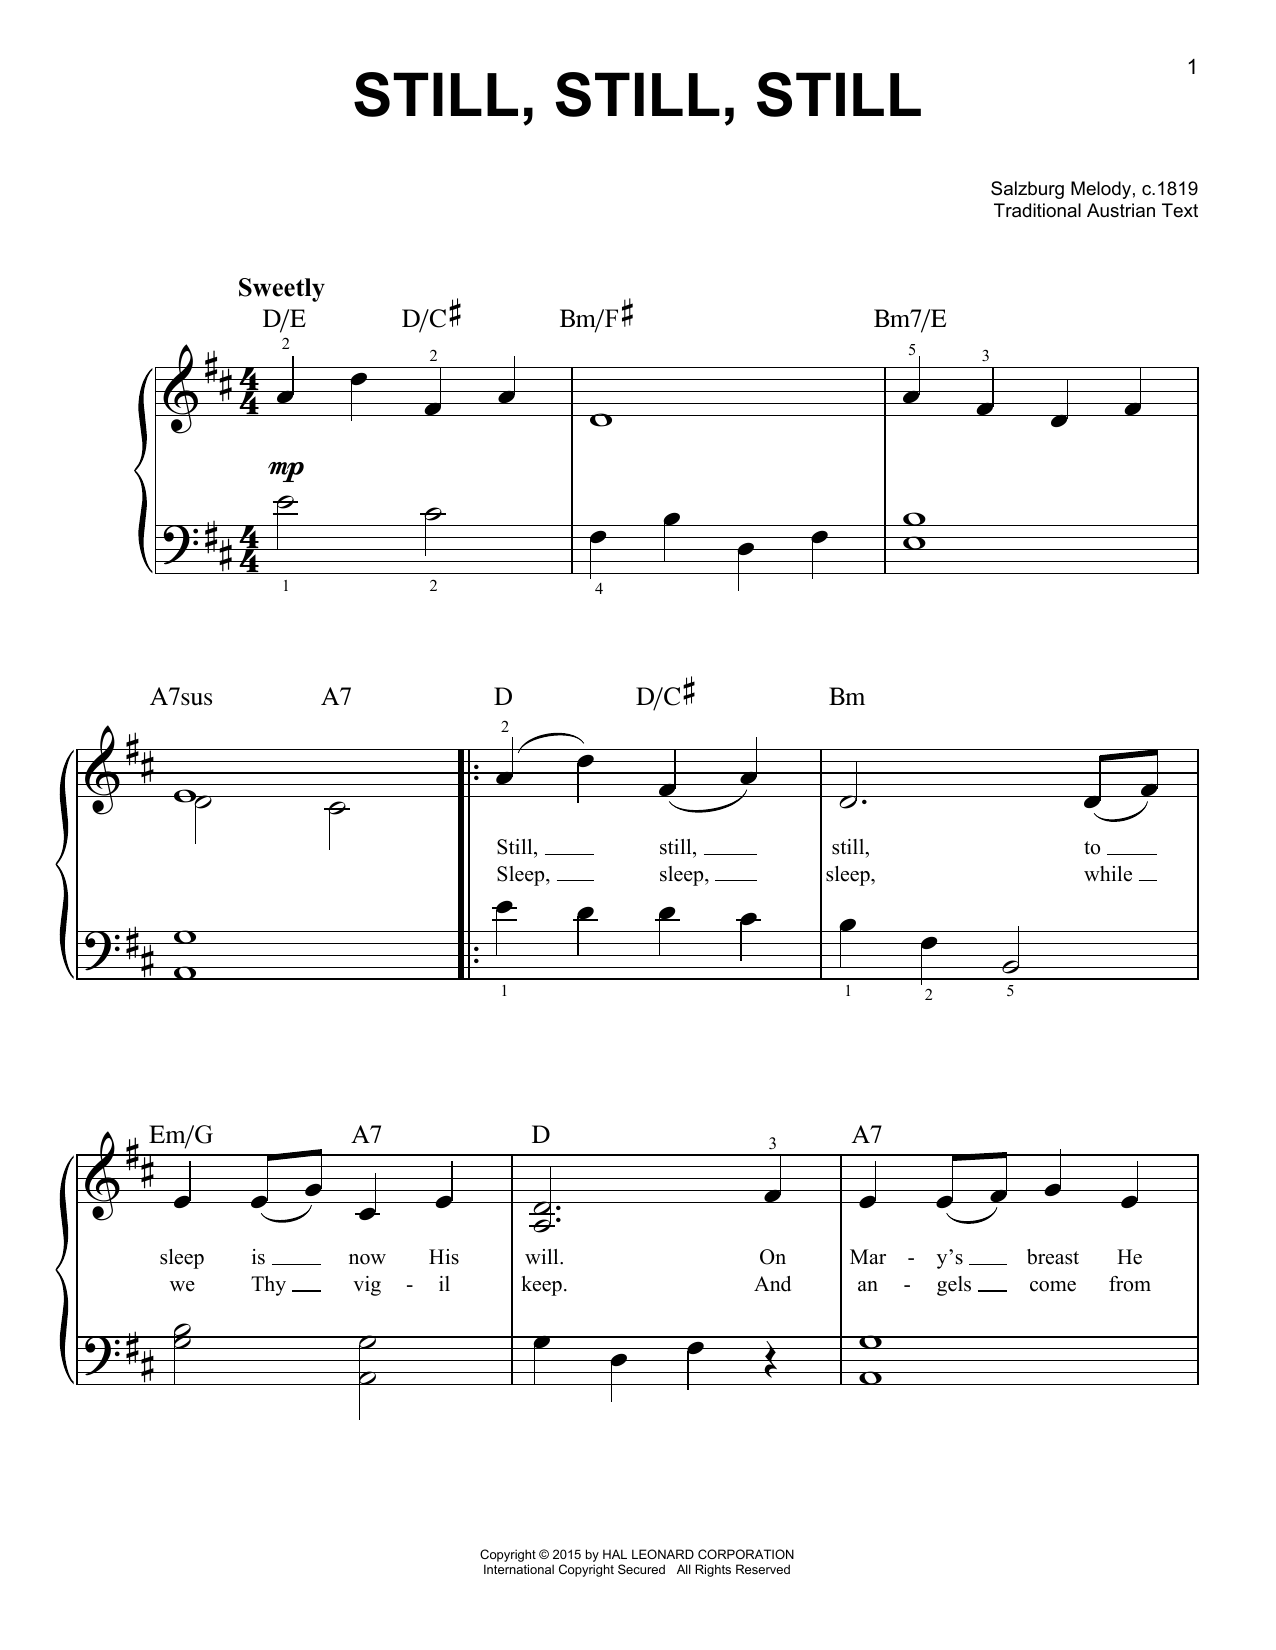 Salzburg Melody, c.1819 Still, Still, Still sheet music notes and chords arranged for Flute Duet